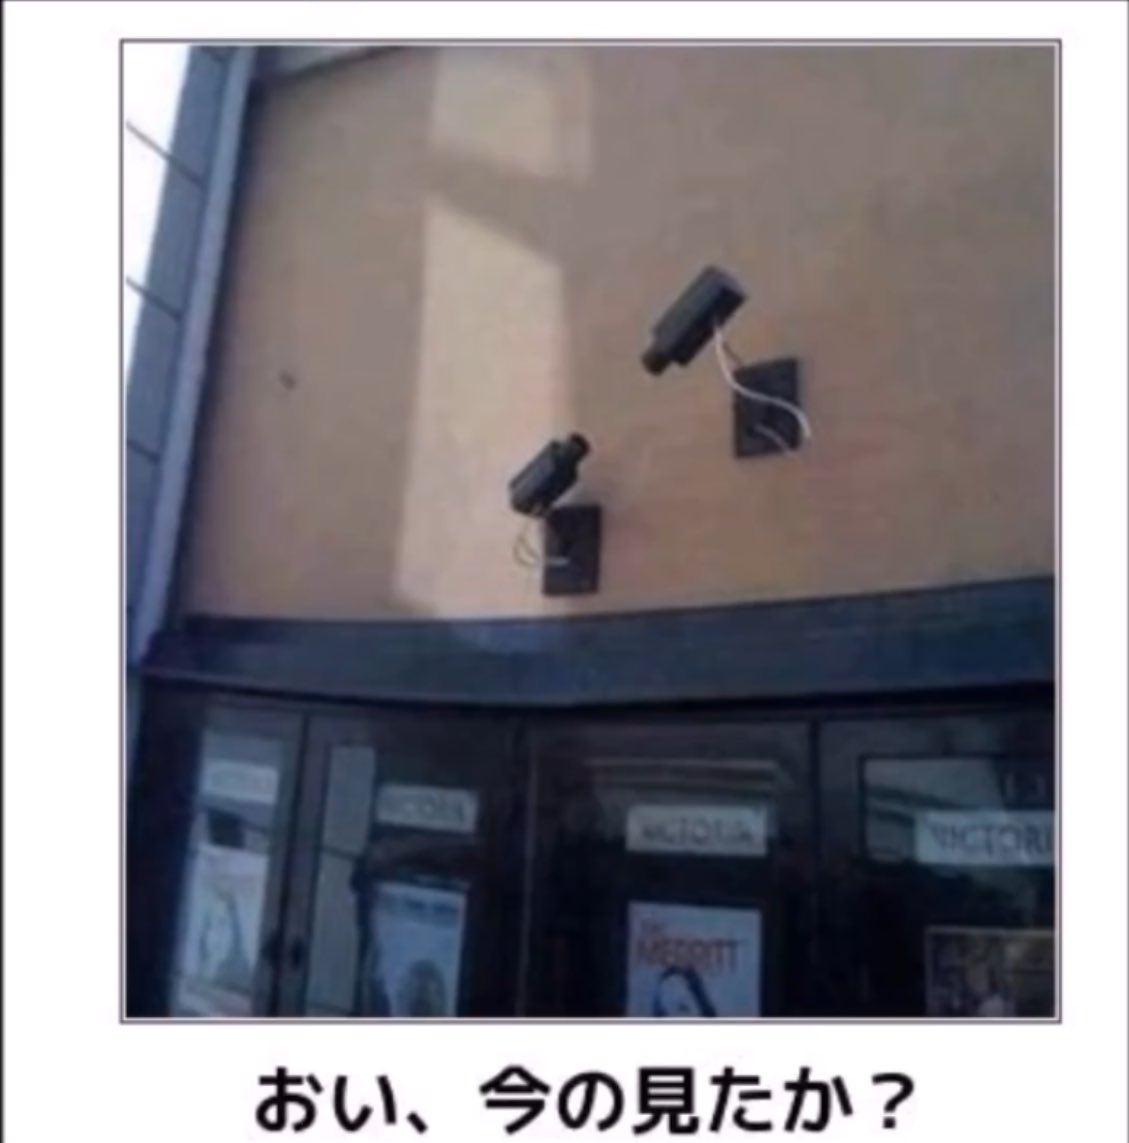 【優しい世界】あるコンビニの店頭に設置された監視カメラが重労働すぎるwww